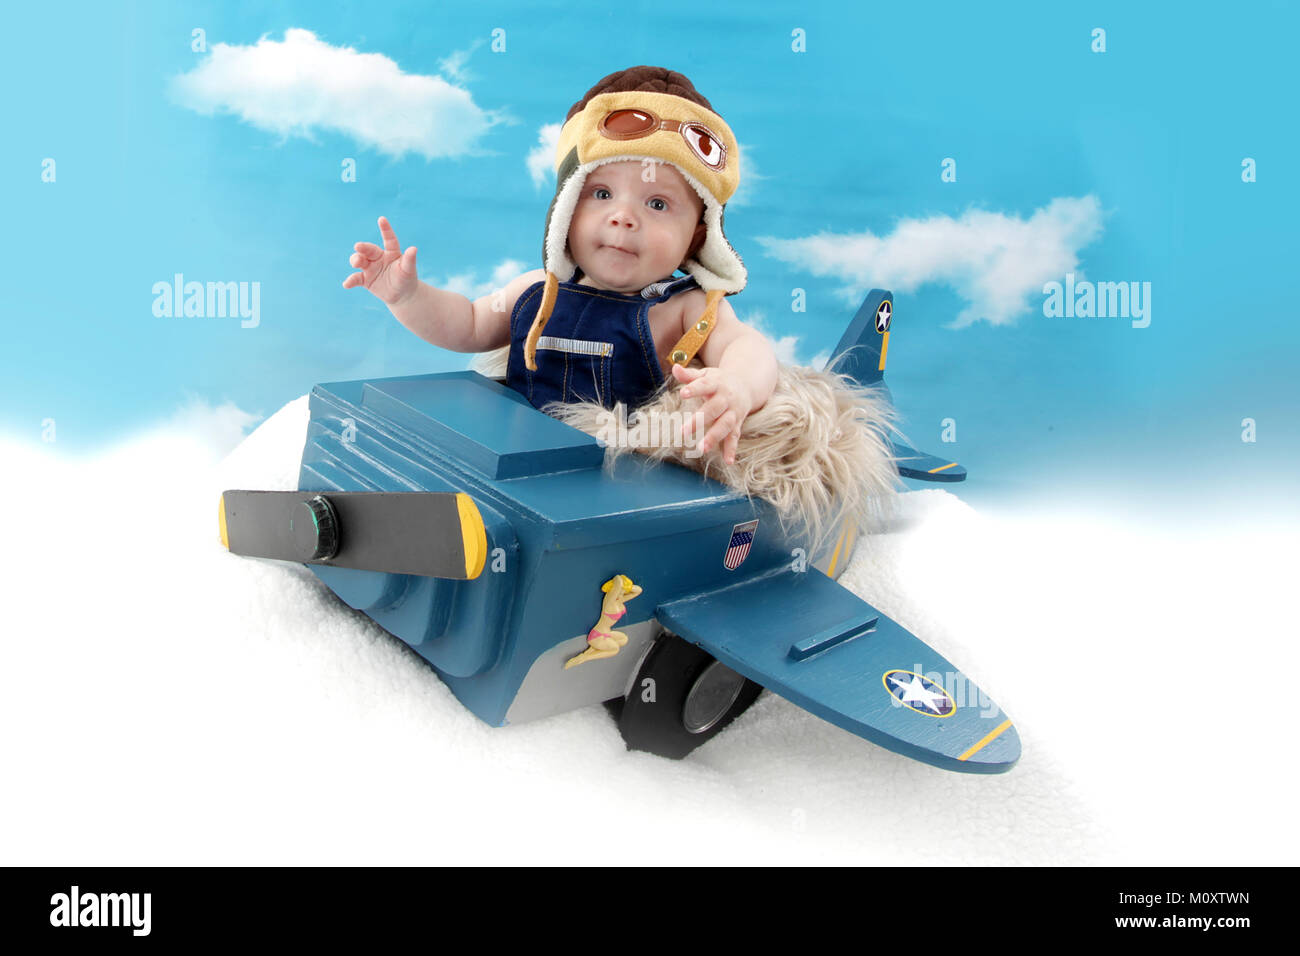 Garçon âgé de 5 mois en avion jouet, jeu de rôle pilot Banque D'Images